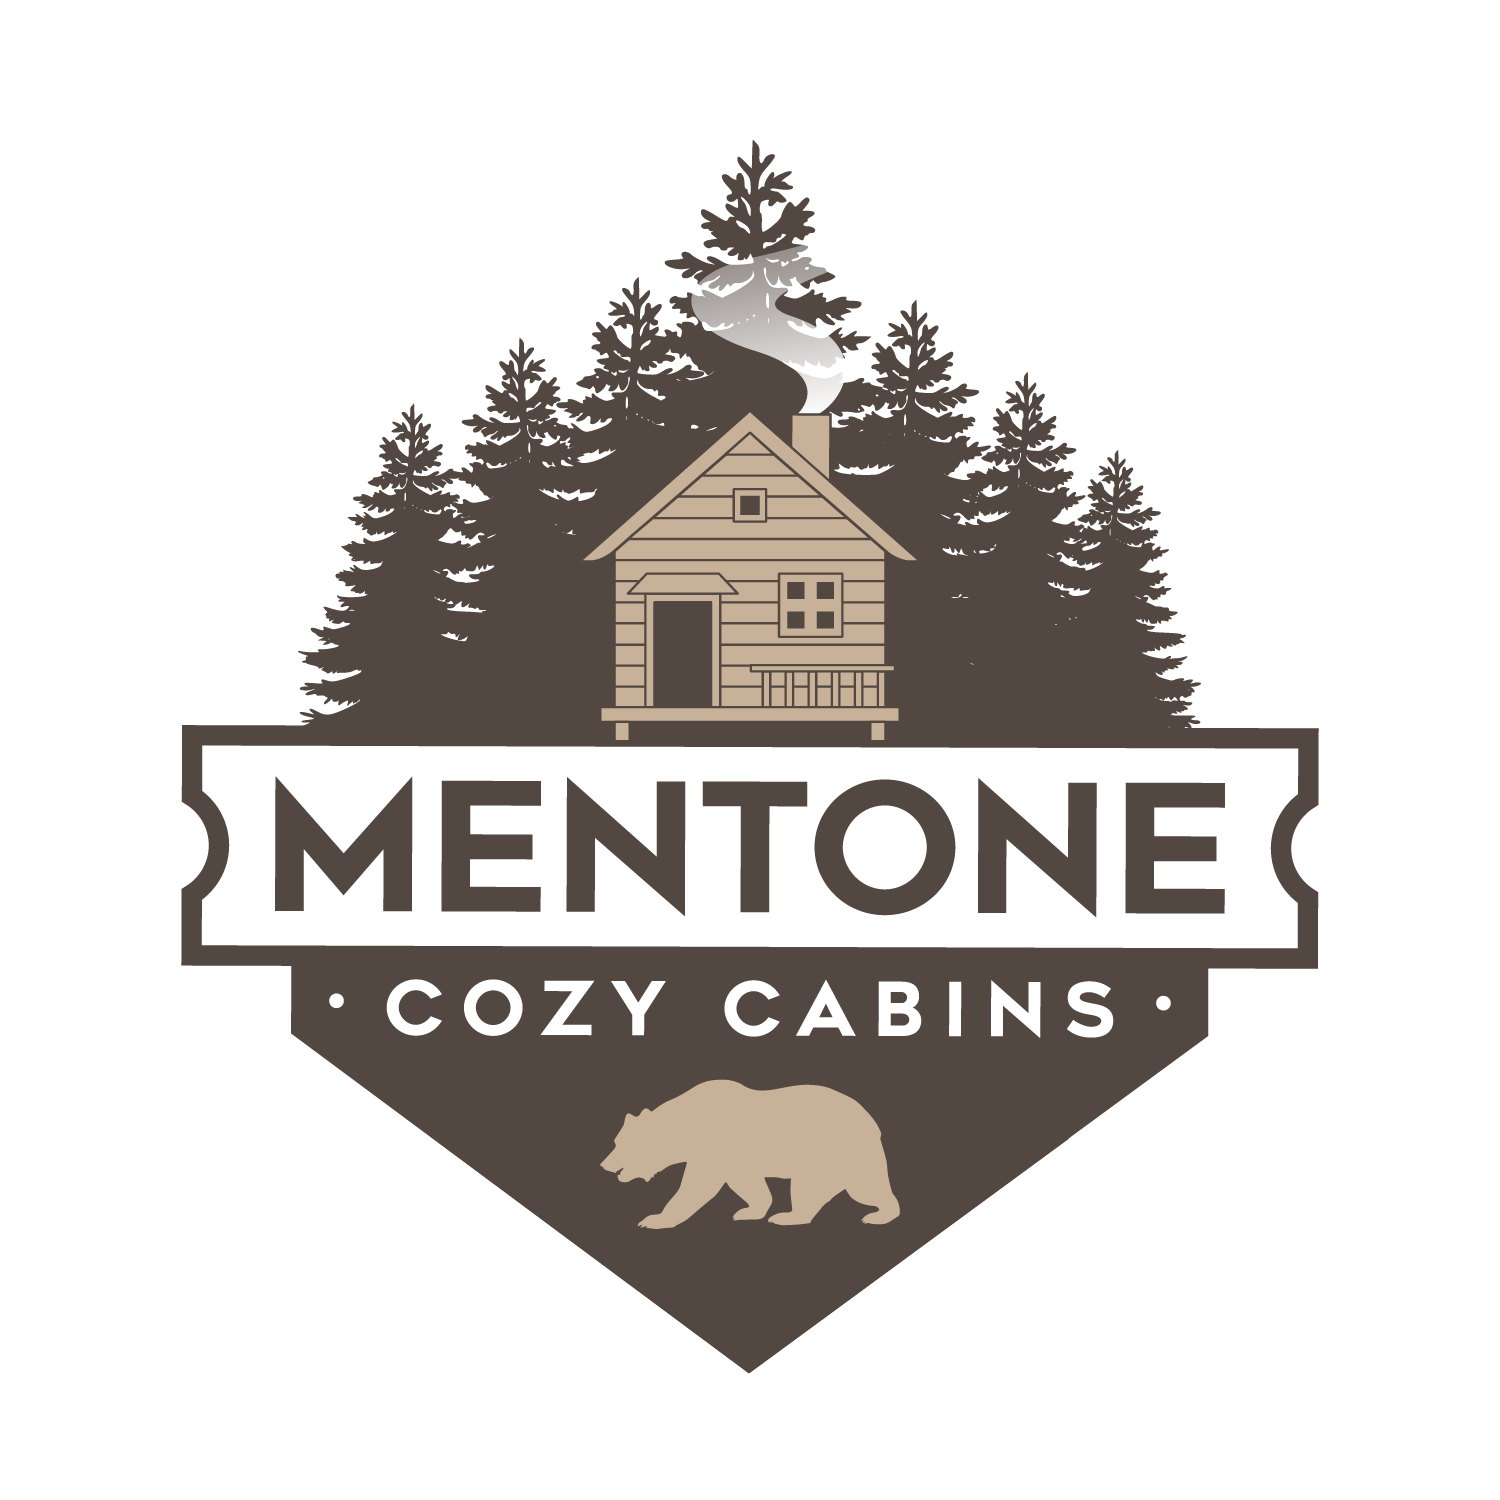 Mentone Cozy Cabins